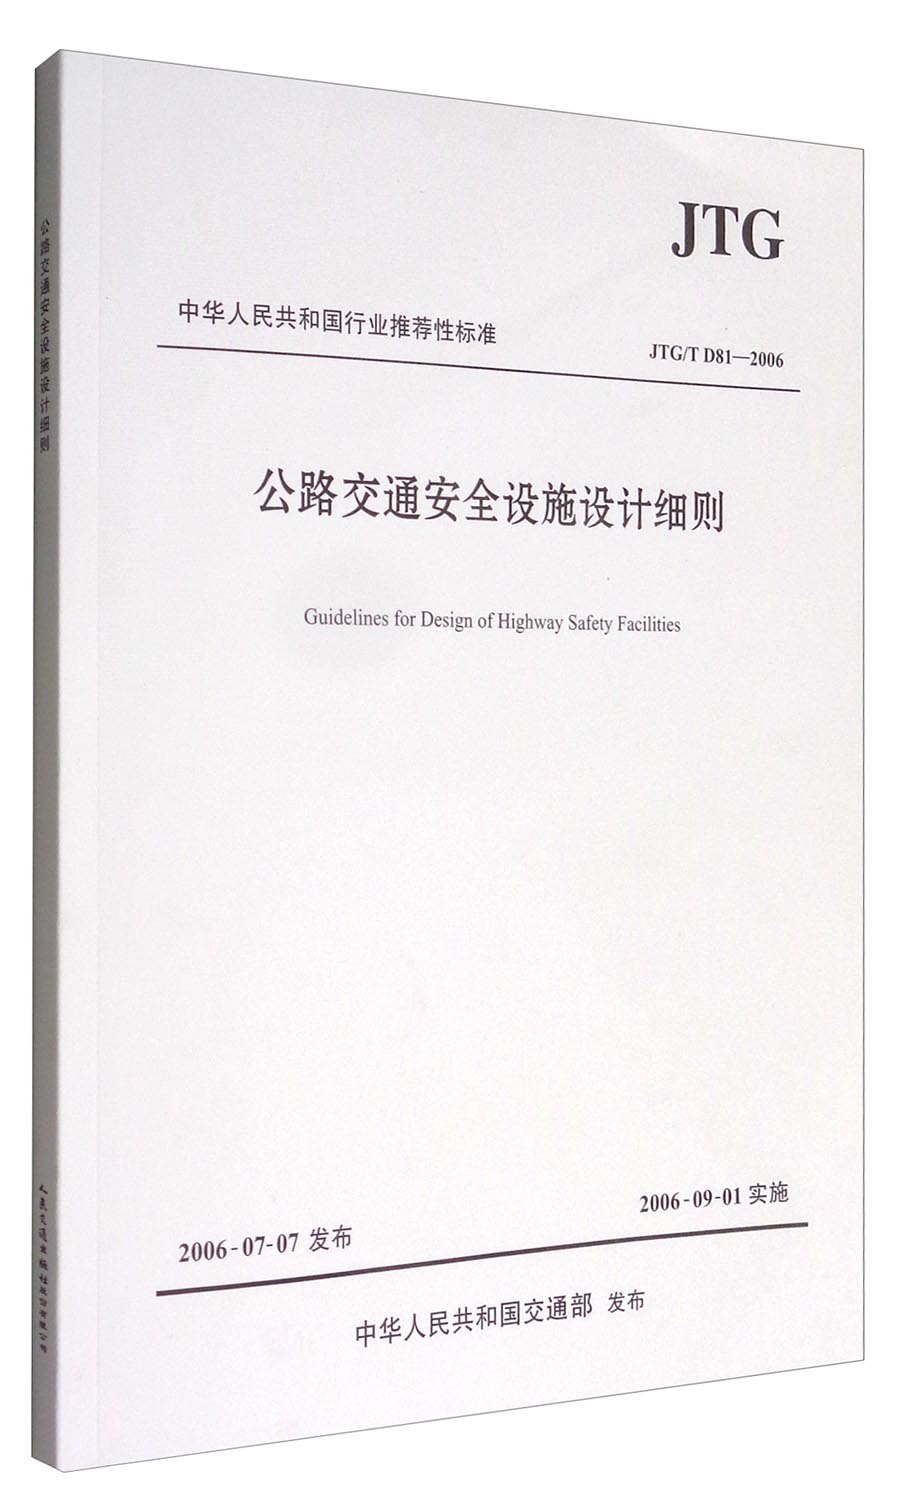 中华人民共和国行业推荐性标准（JTG/T D81-2006）：公路交通安全设施设计细则 azw3格式下载